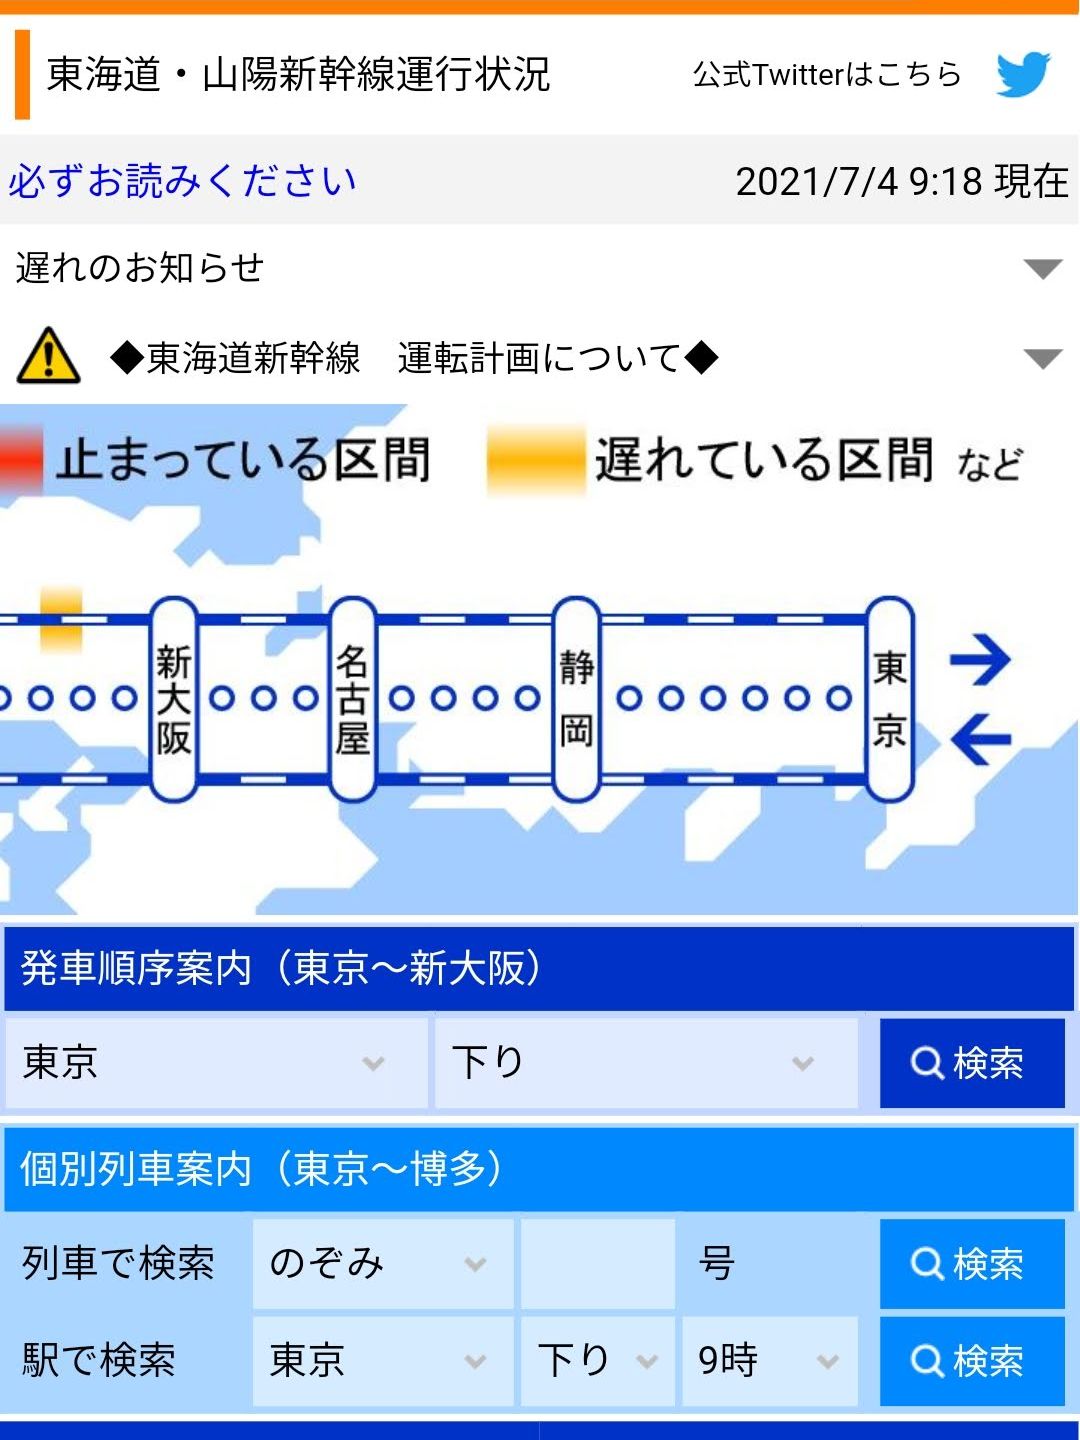 新幹線の運行状況